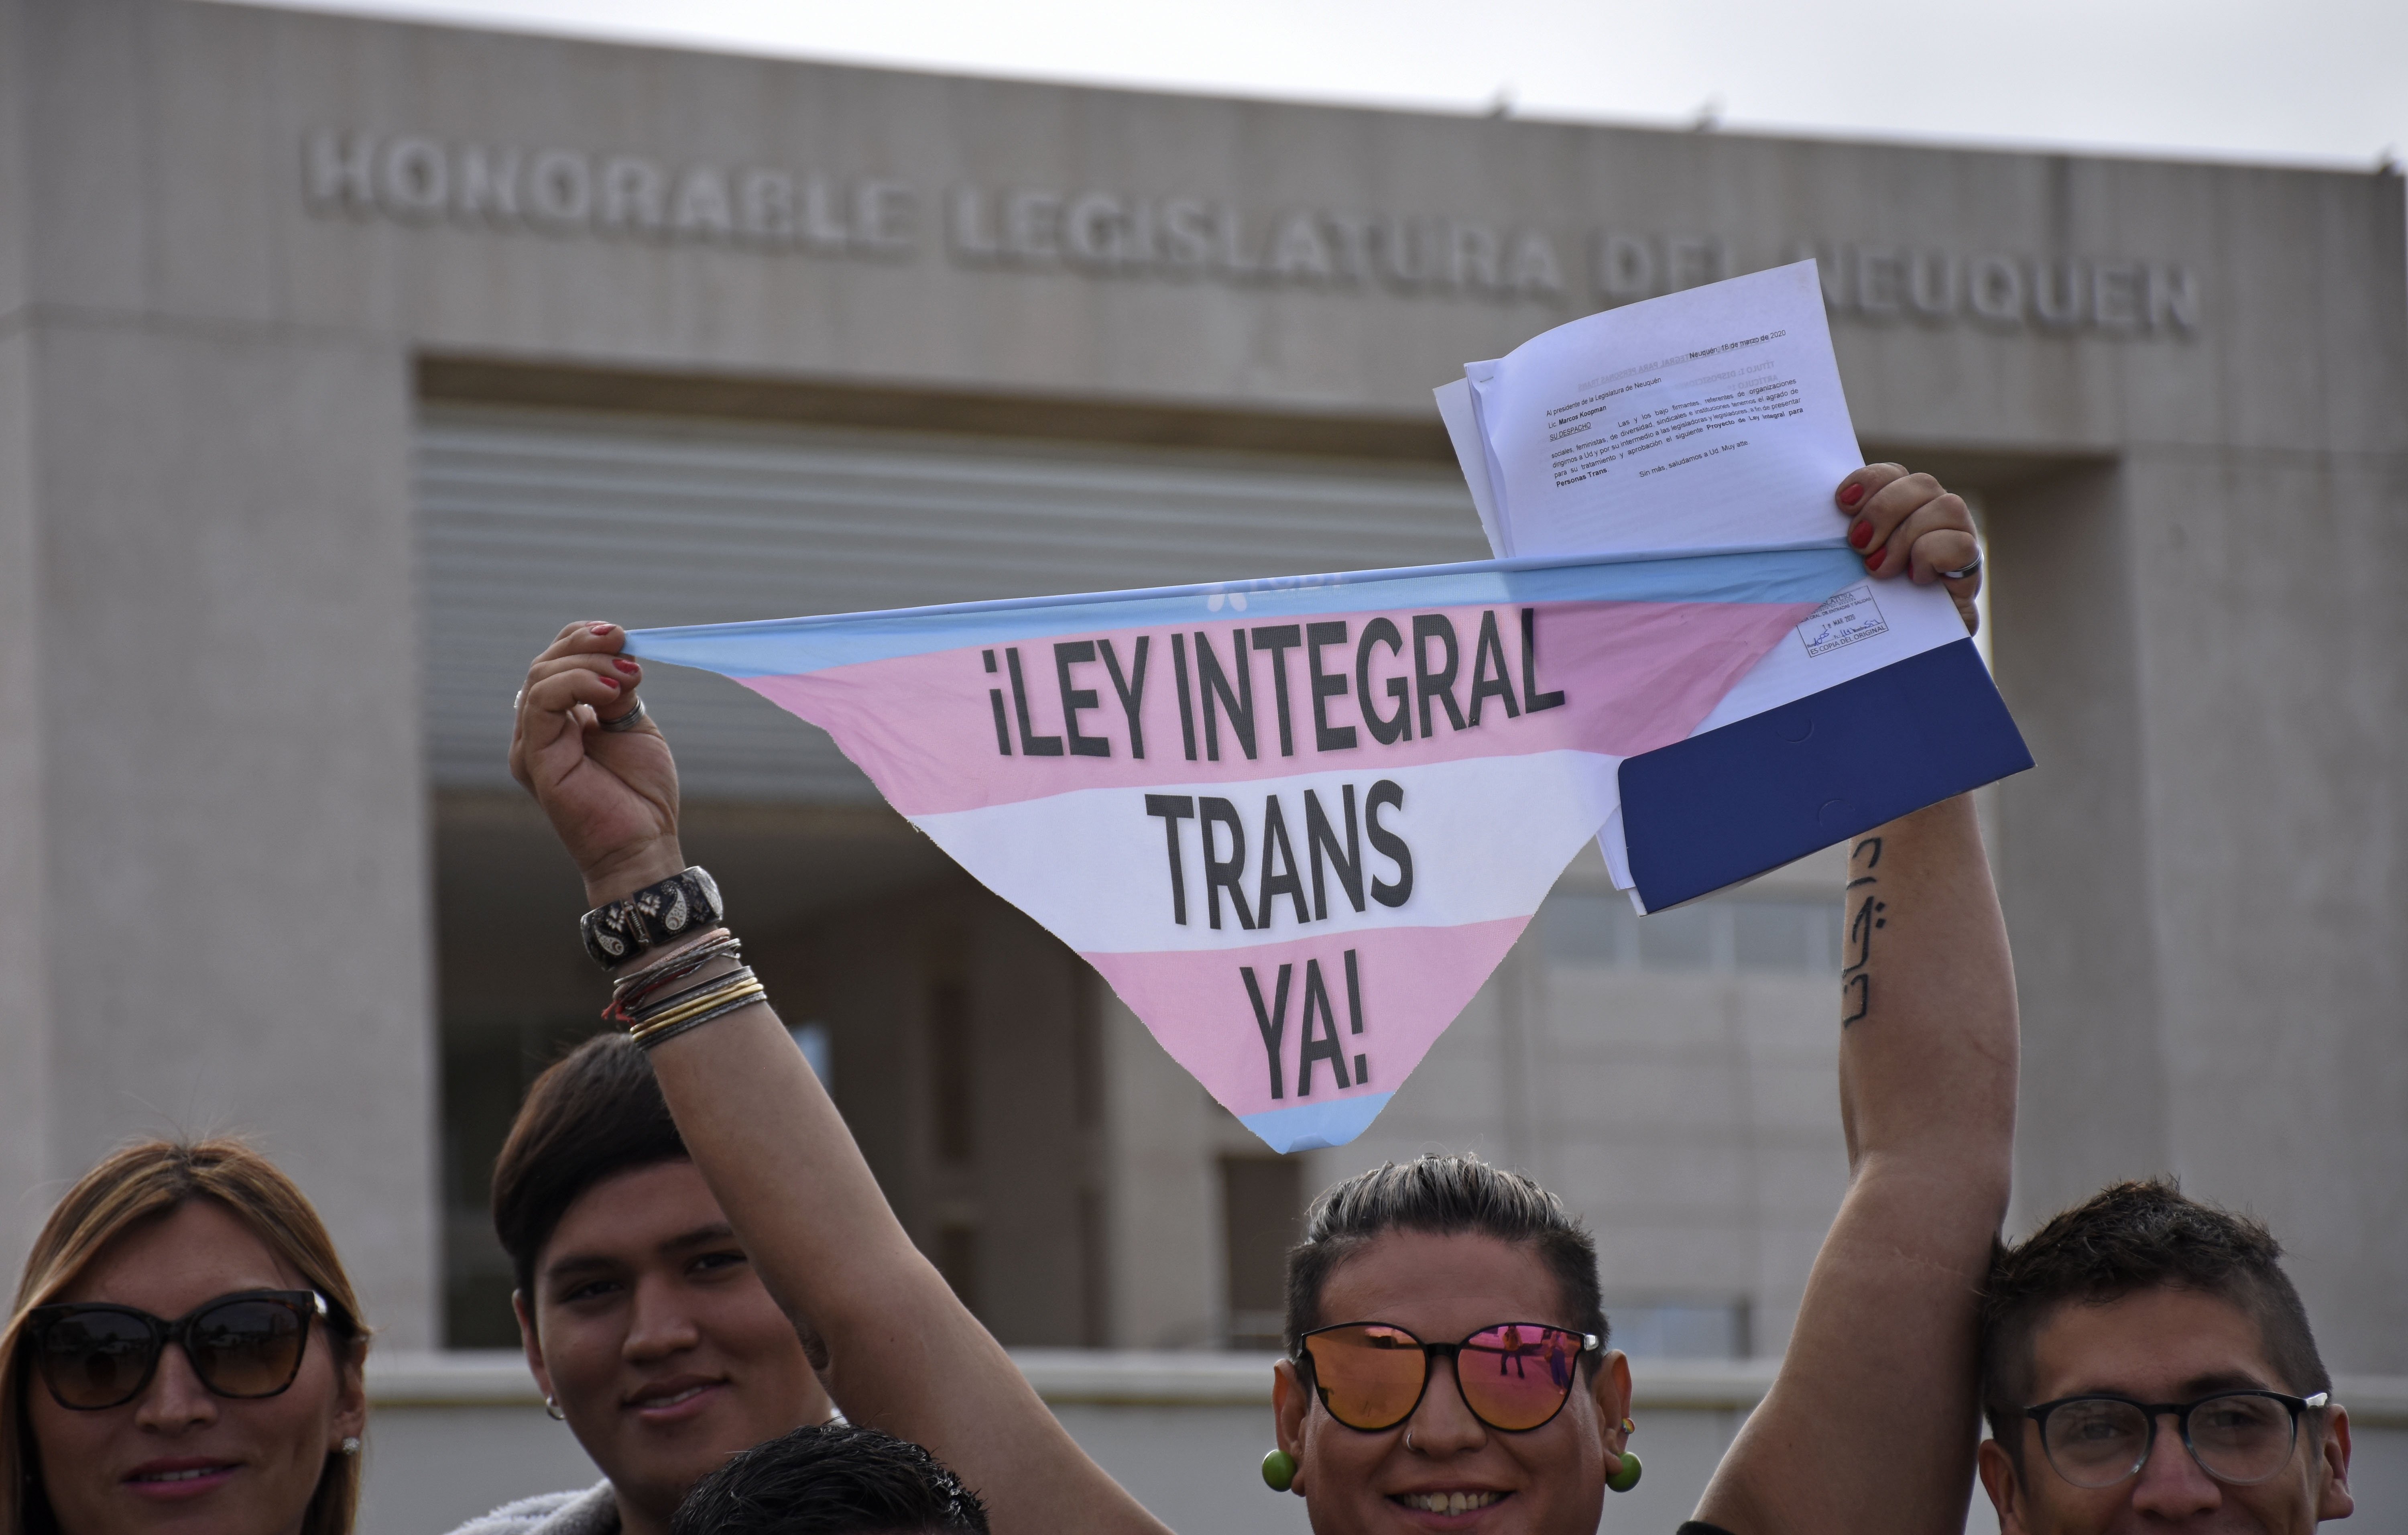 En marzo pasado fue presentado el proyecto de ley integral trans. Foto Florencia Salto.